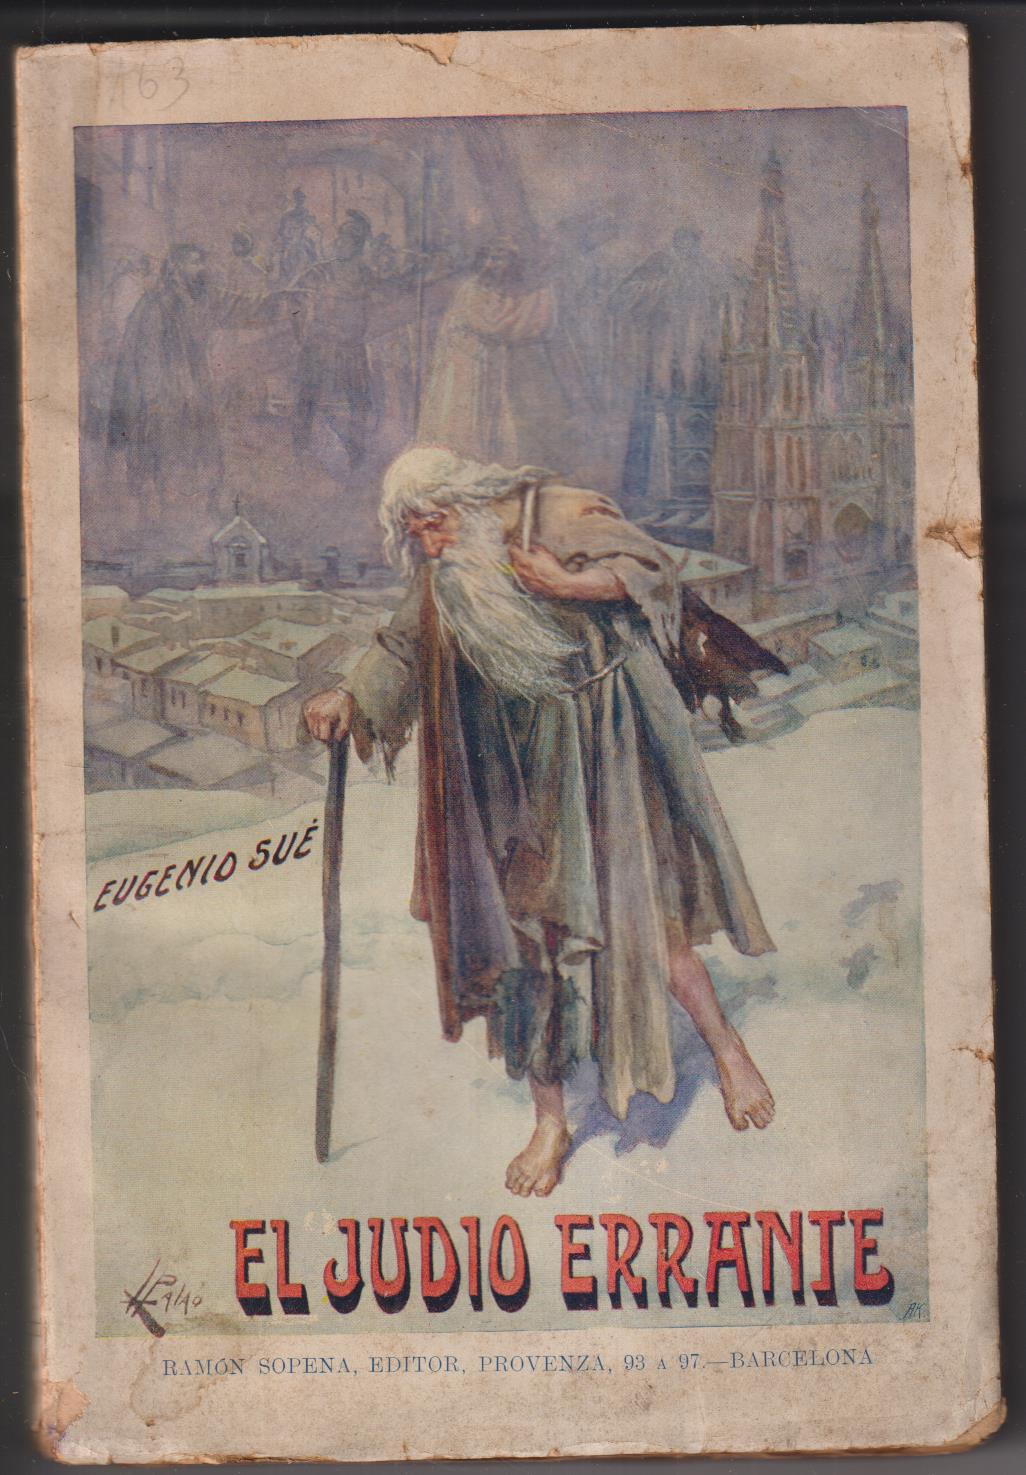 Eugenio Sué. El Judío Errante. Editorial Ramón sopena (1930)